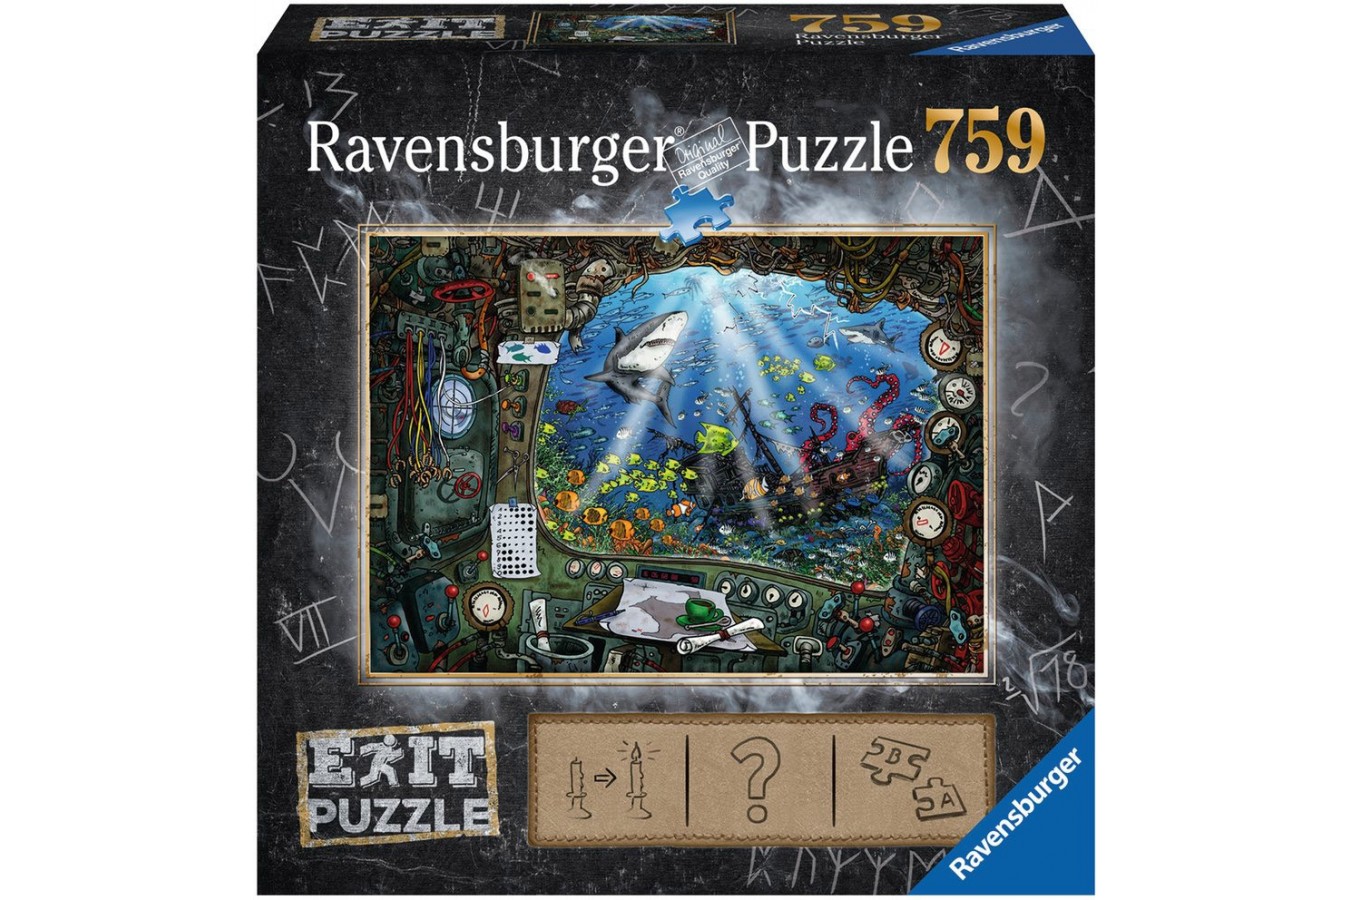 Puzzle Ravensburger - Exit Puzzle - Submarine, 759 piese (19953)